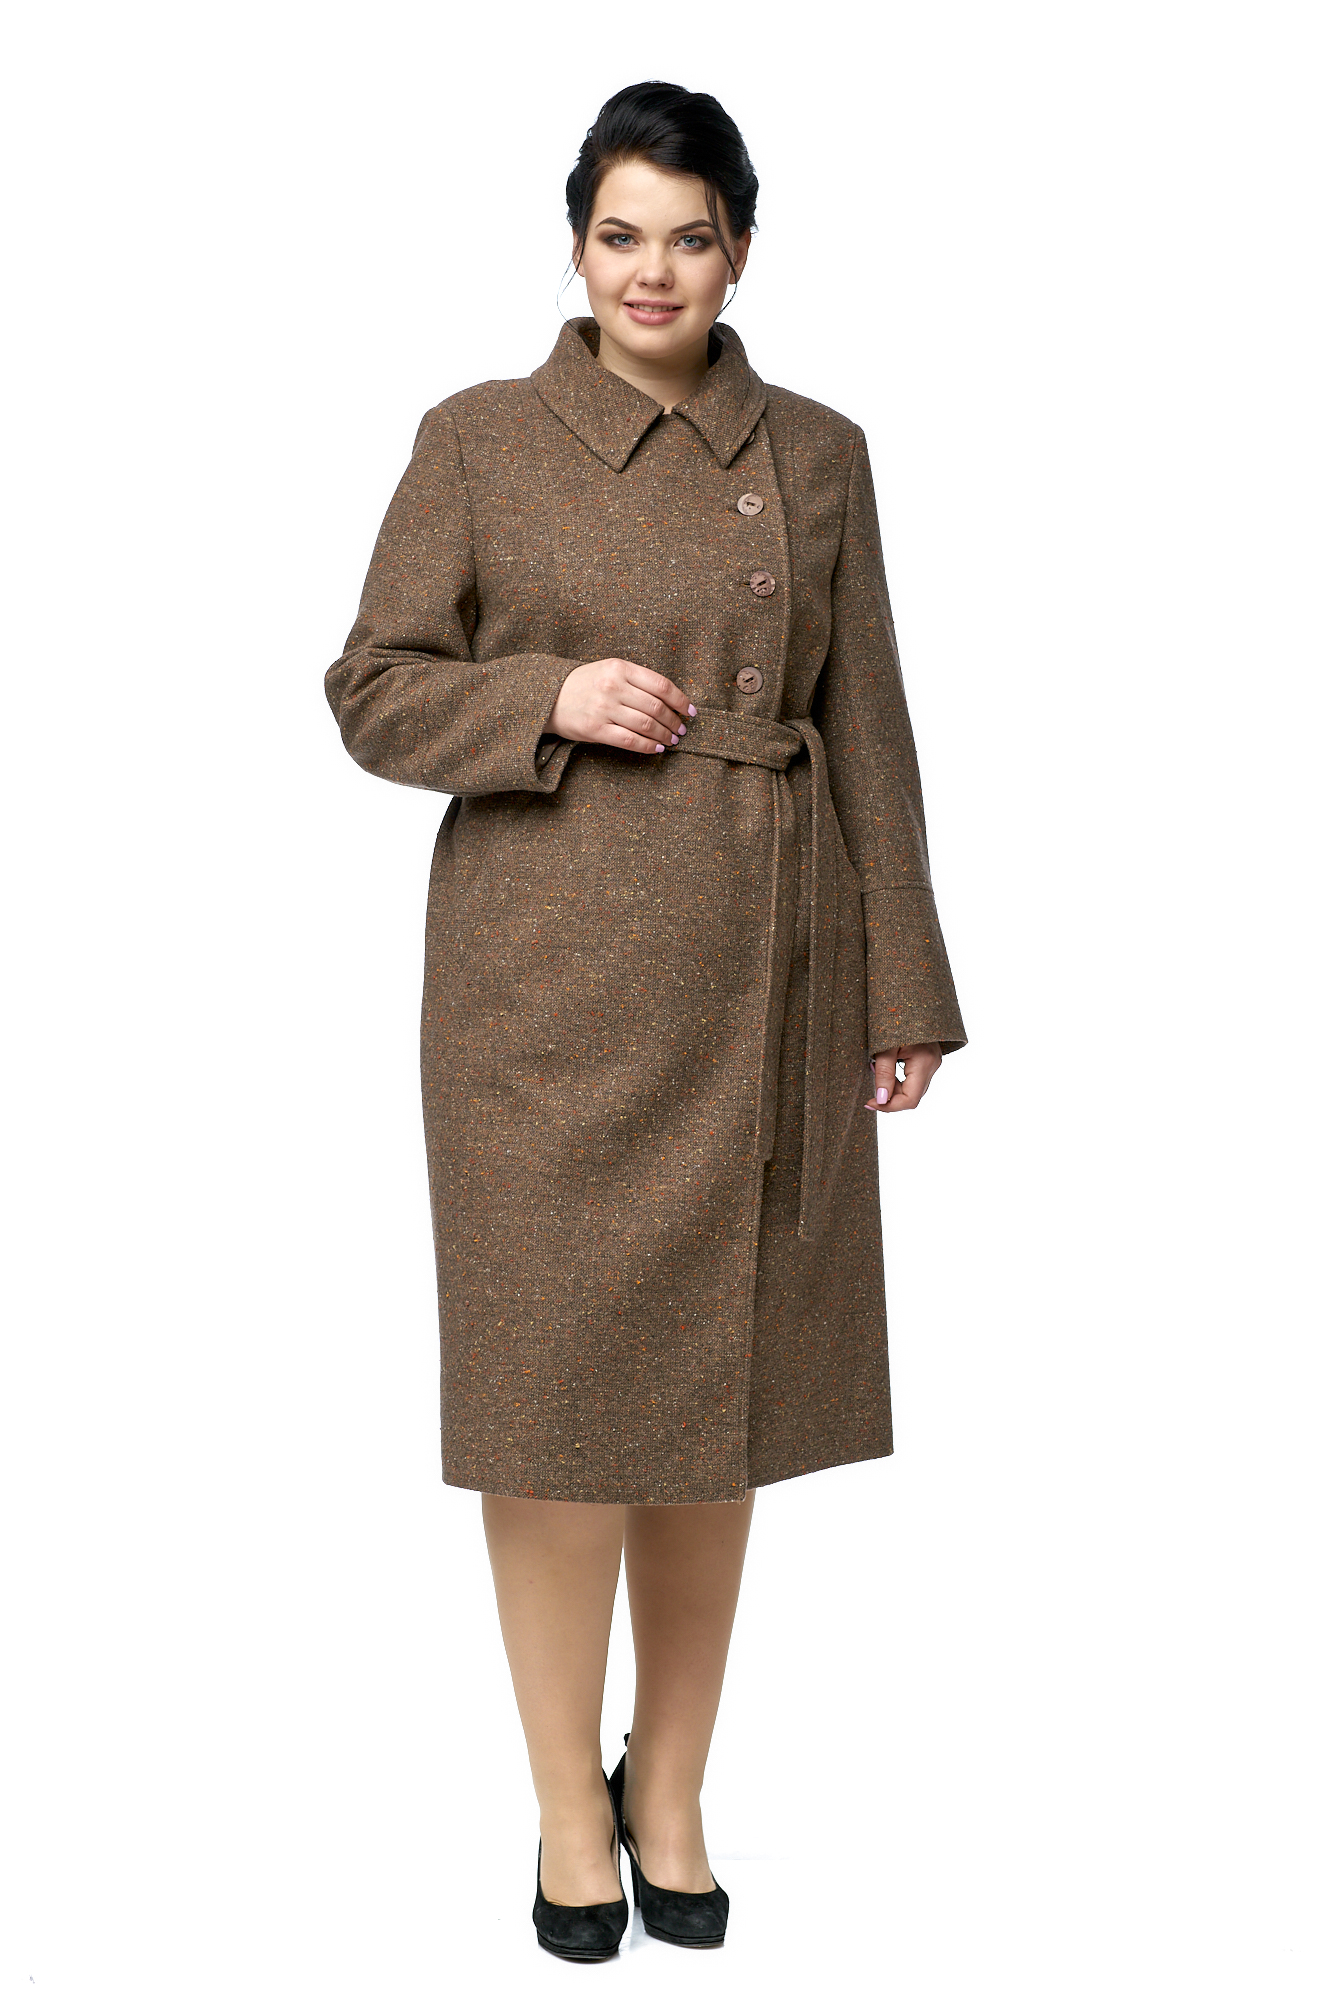 Женское пальто из текстиля с воротником 8001051-2